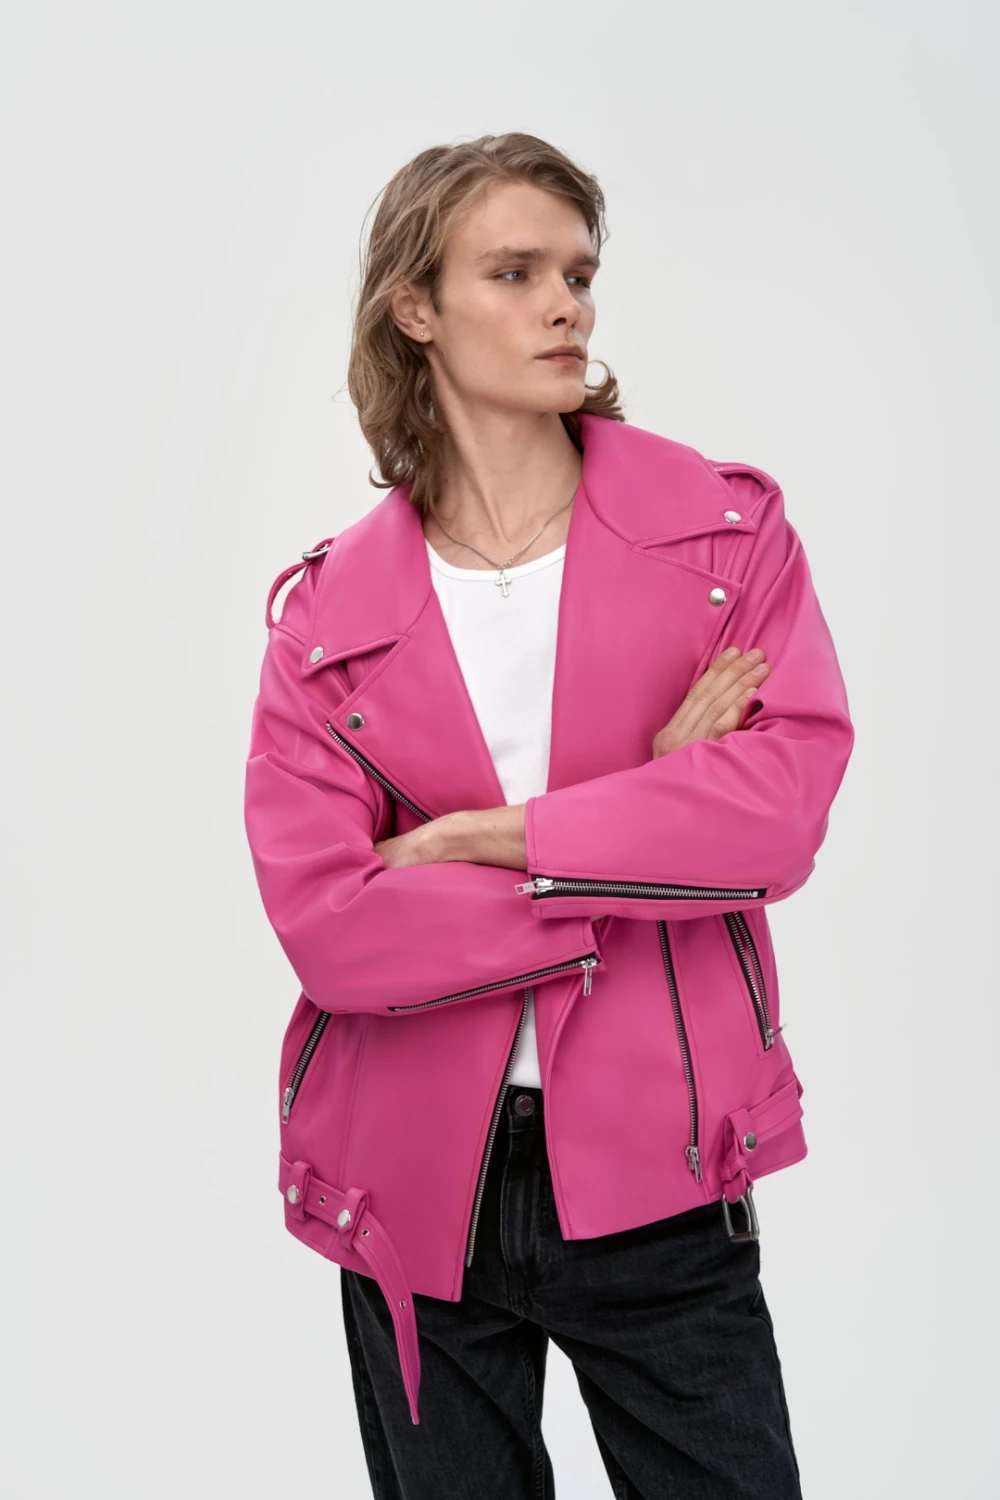 biker jacket in pink color